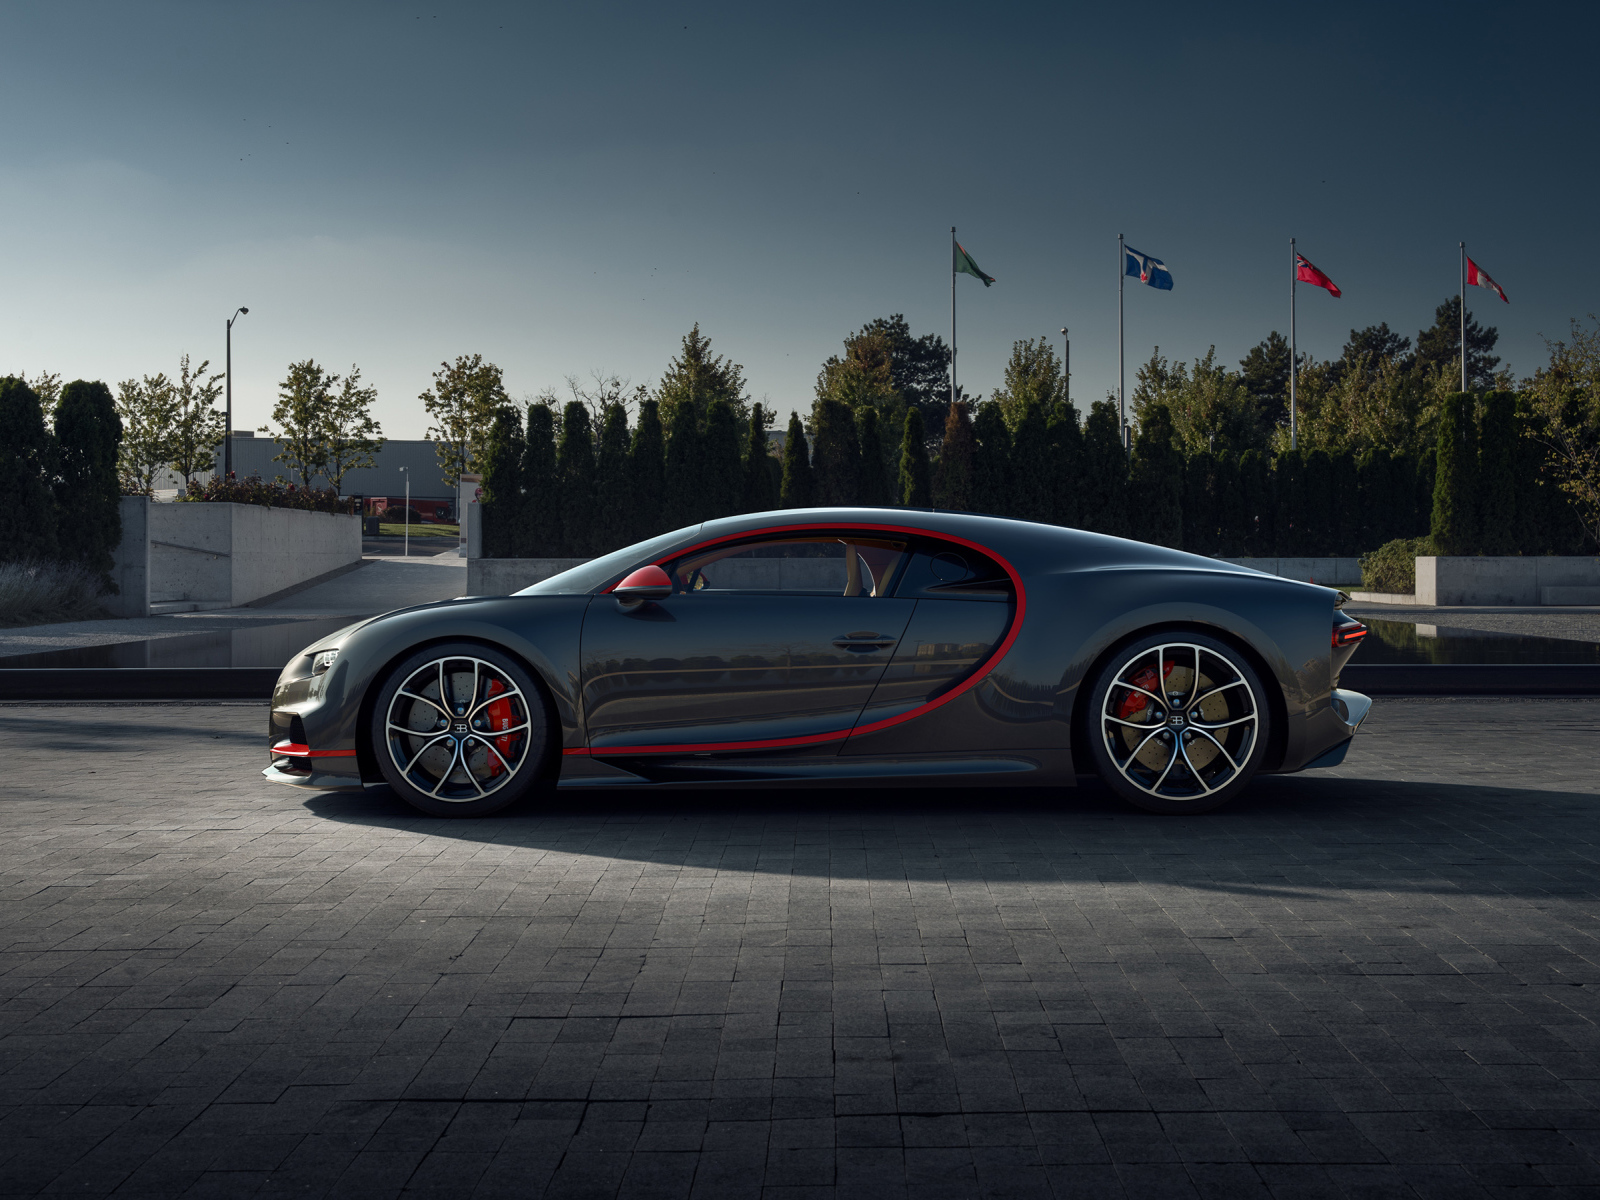 2020Auto___Bugatti_Gray_Bugatti_Chiron_CGI_car_in_the_park_139382_2.jpg